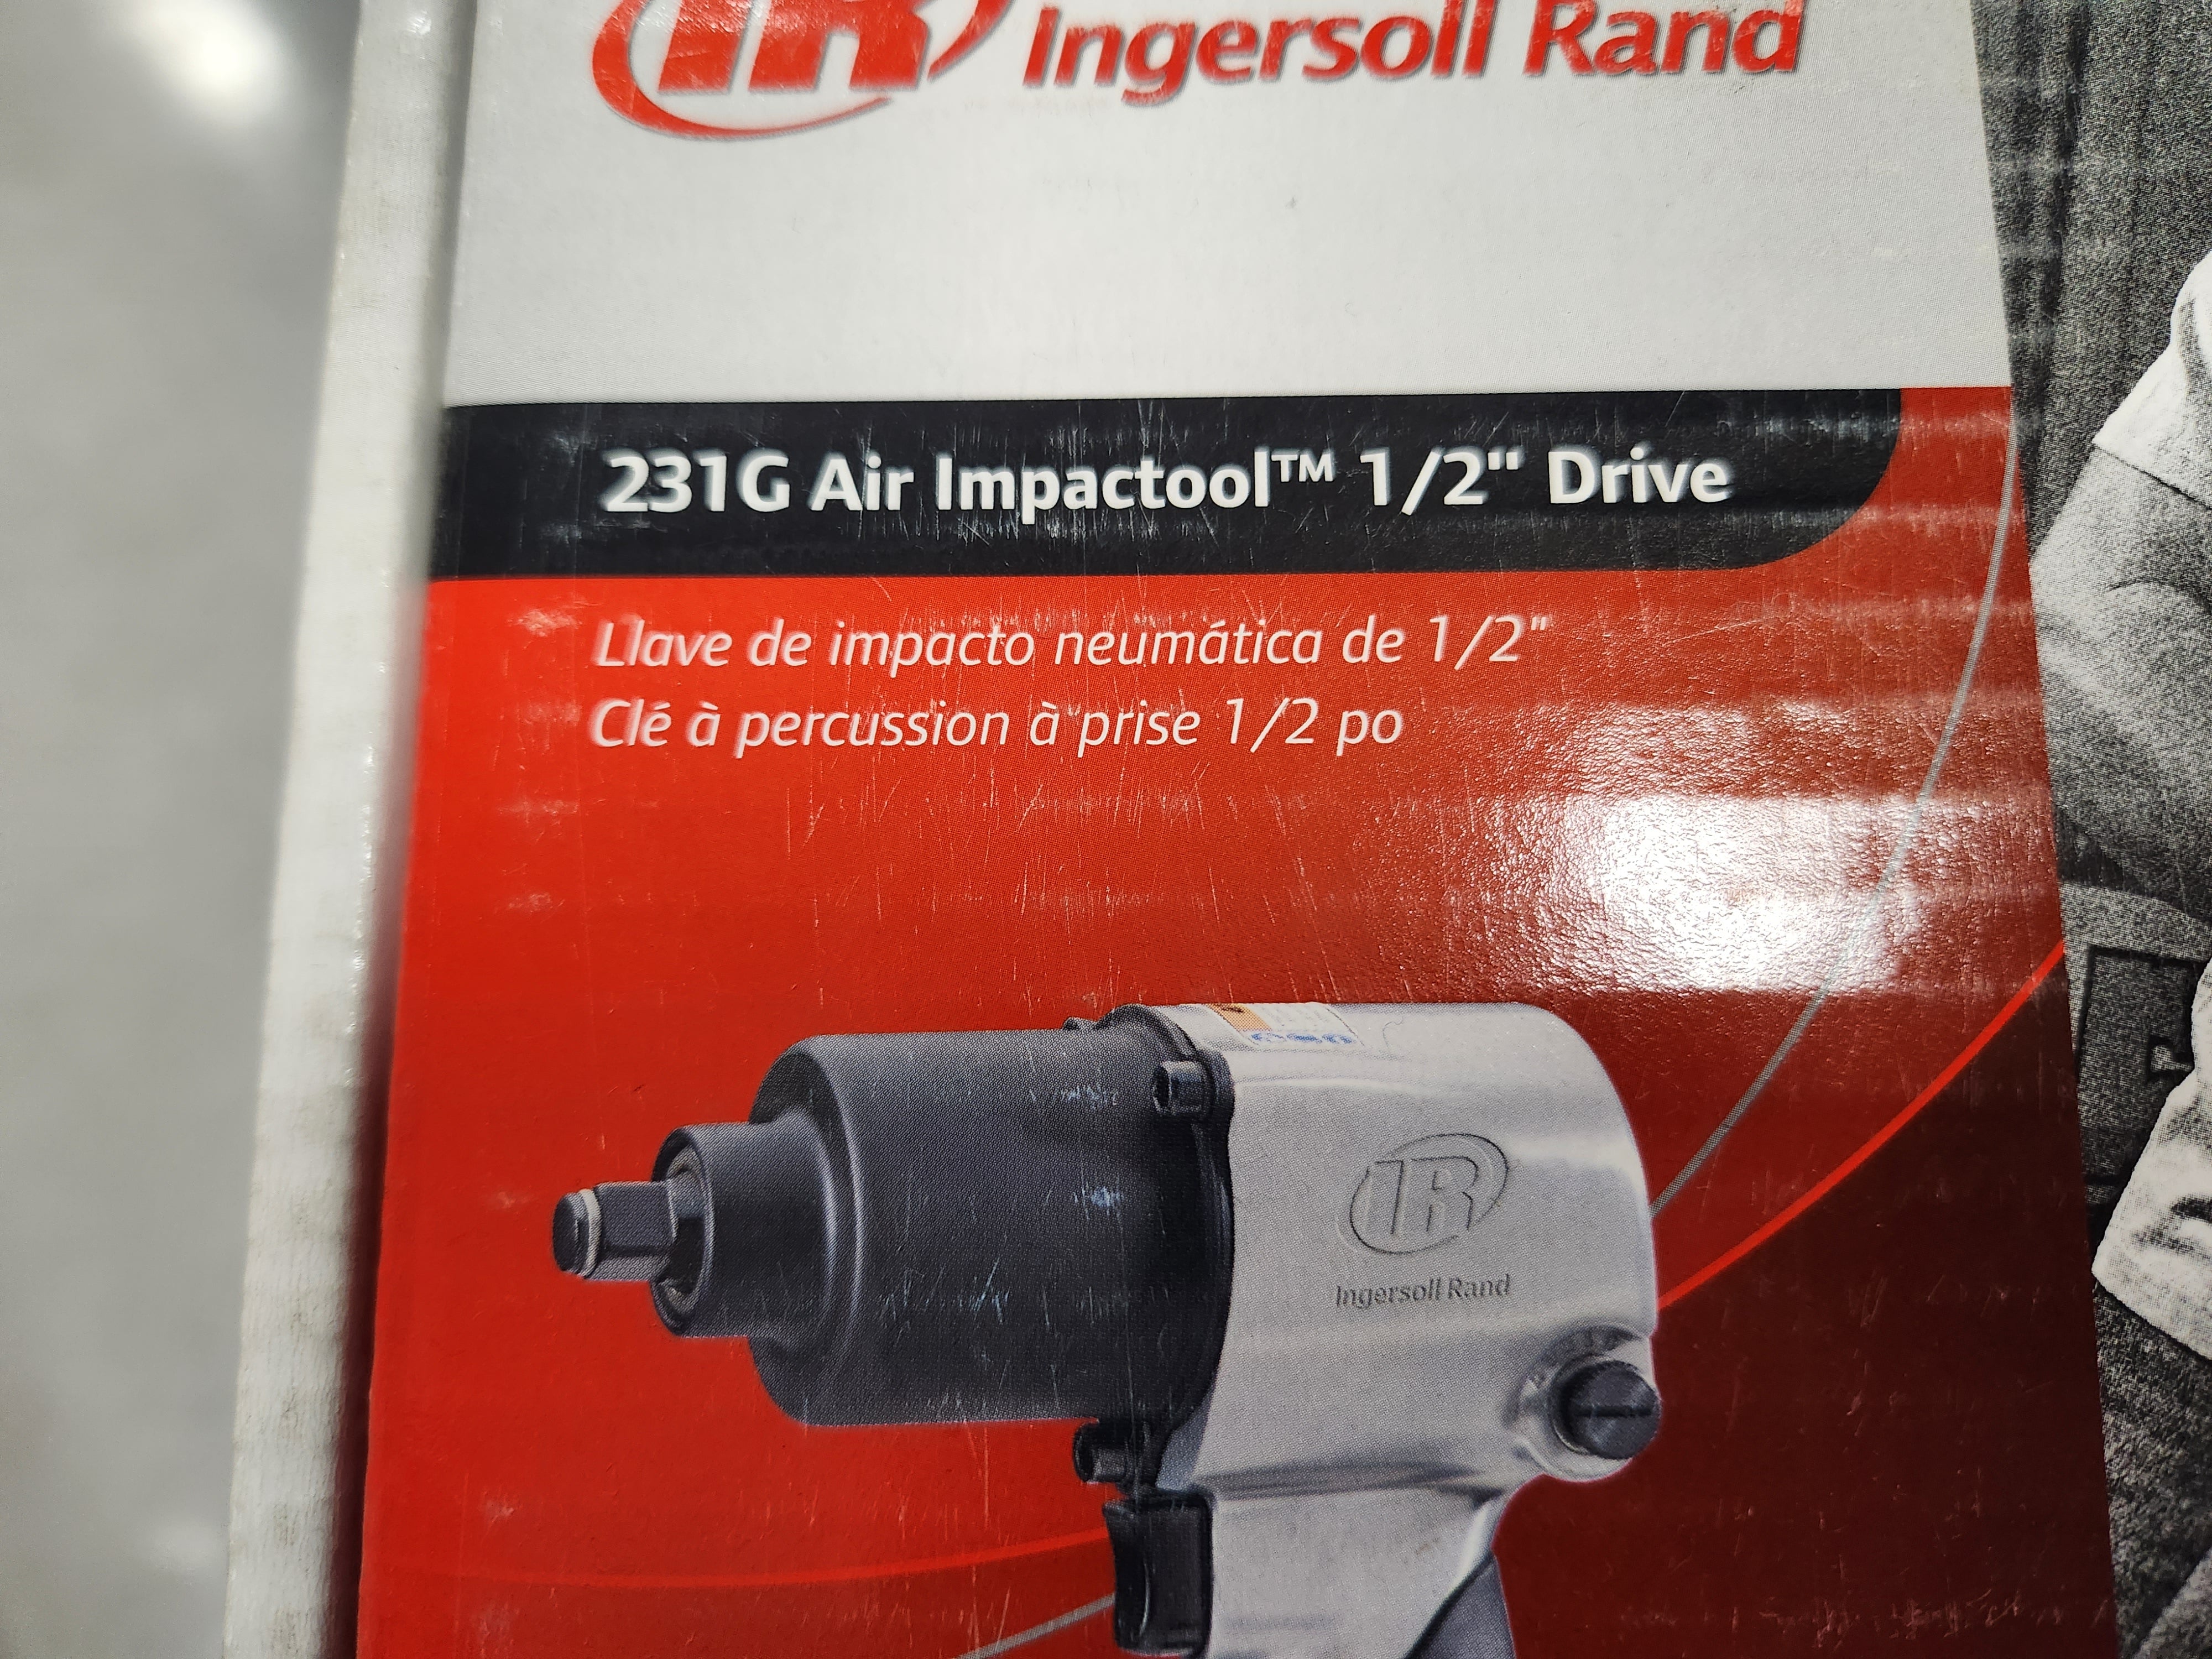 Ingersoll Rand 231G Edge Series 1/2-Inch Air Impactool